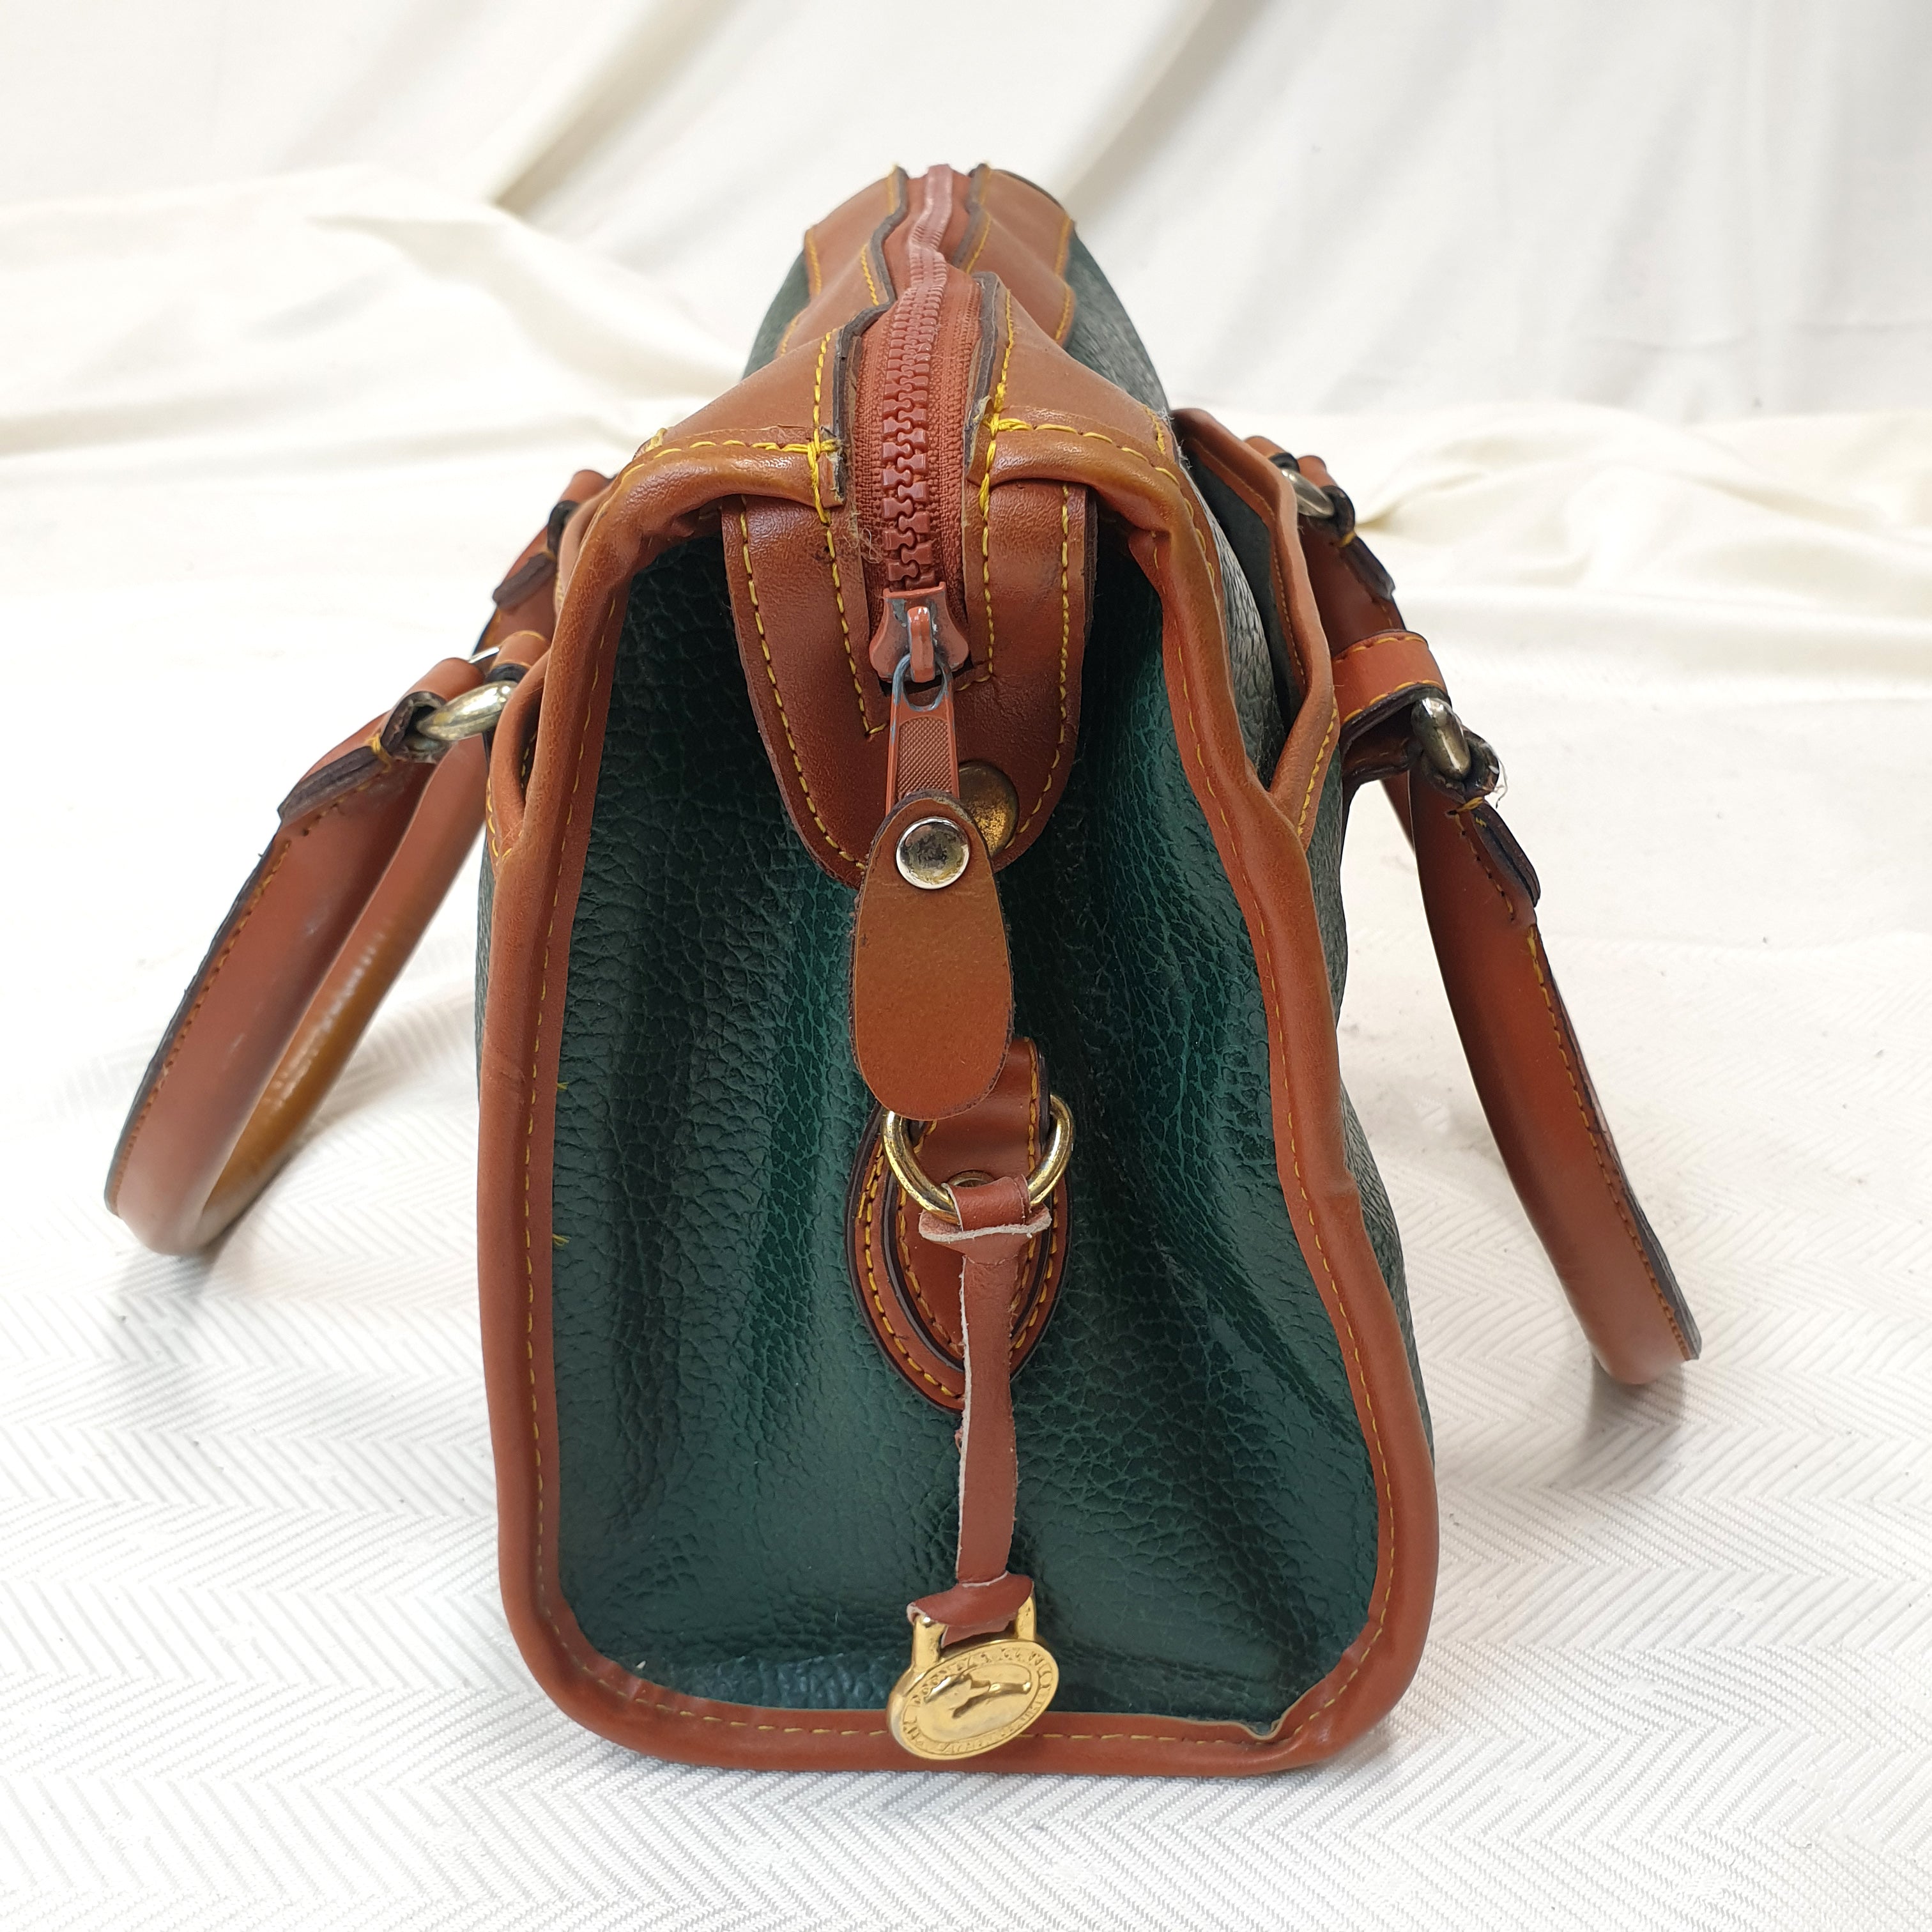 Dooney & Bourke Green Leather Handbag